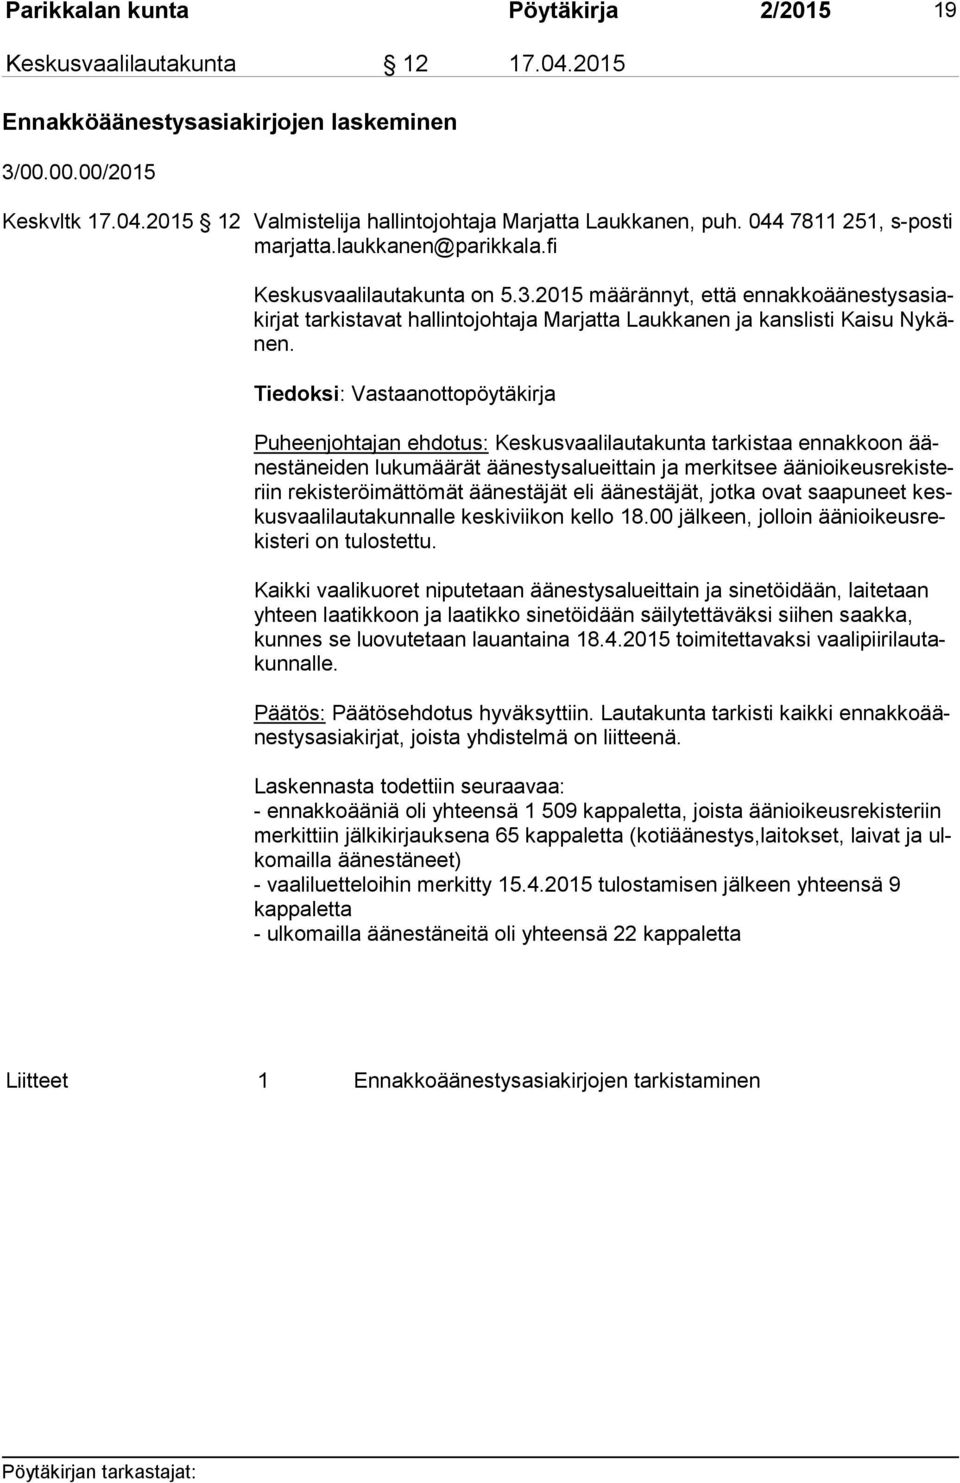 2015 määrännyt, että en nak ko ää nes tys asiakir jat tarkistavat hallintojohtaja Marjatta Laukkanen ja kanslisti Kaisu Ny känen.